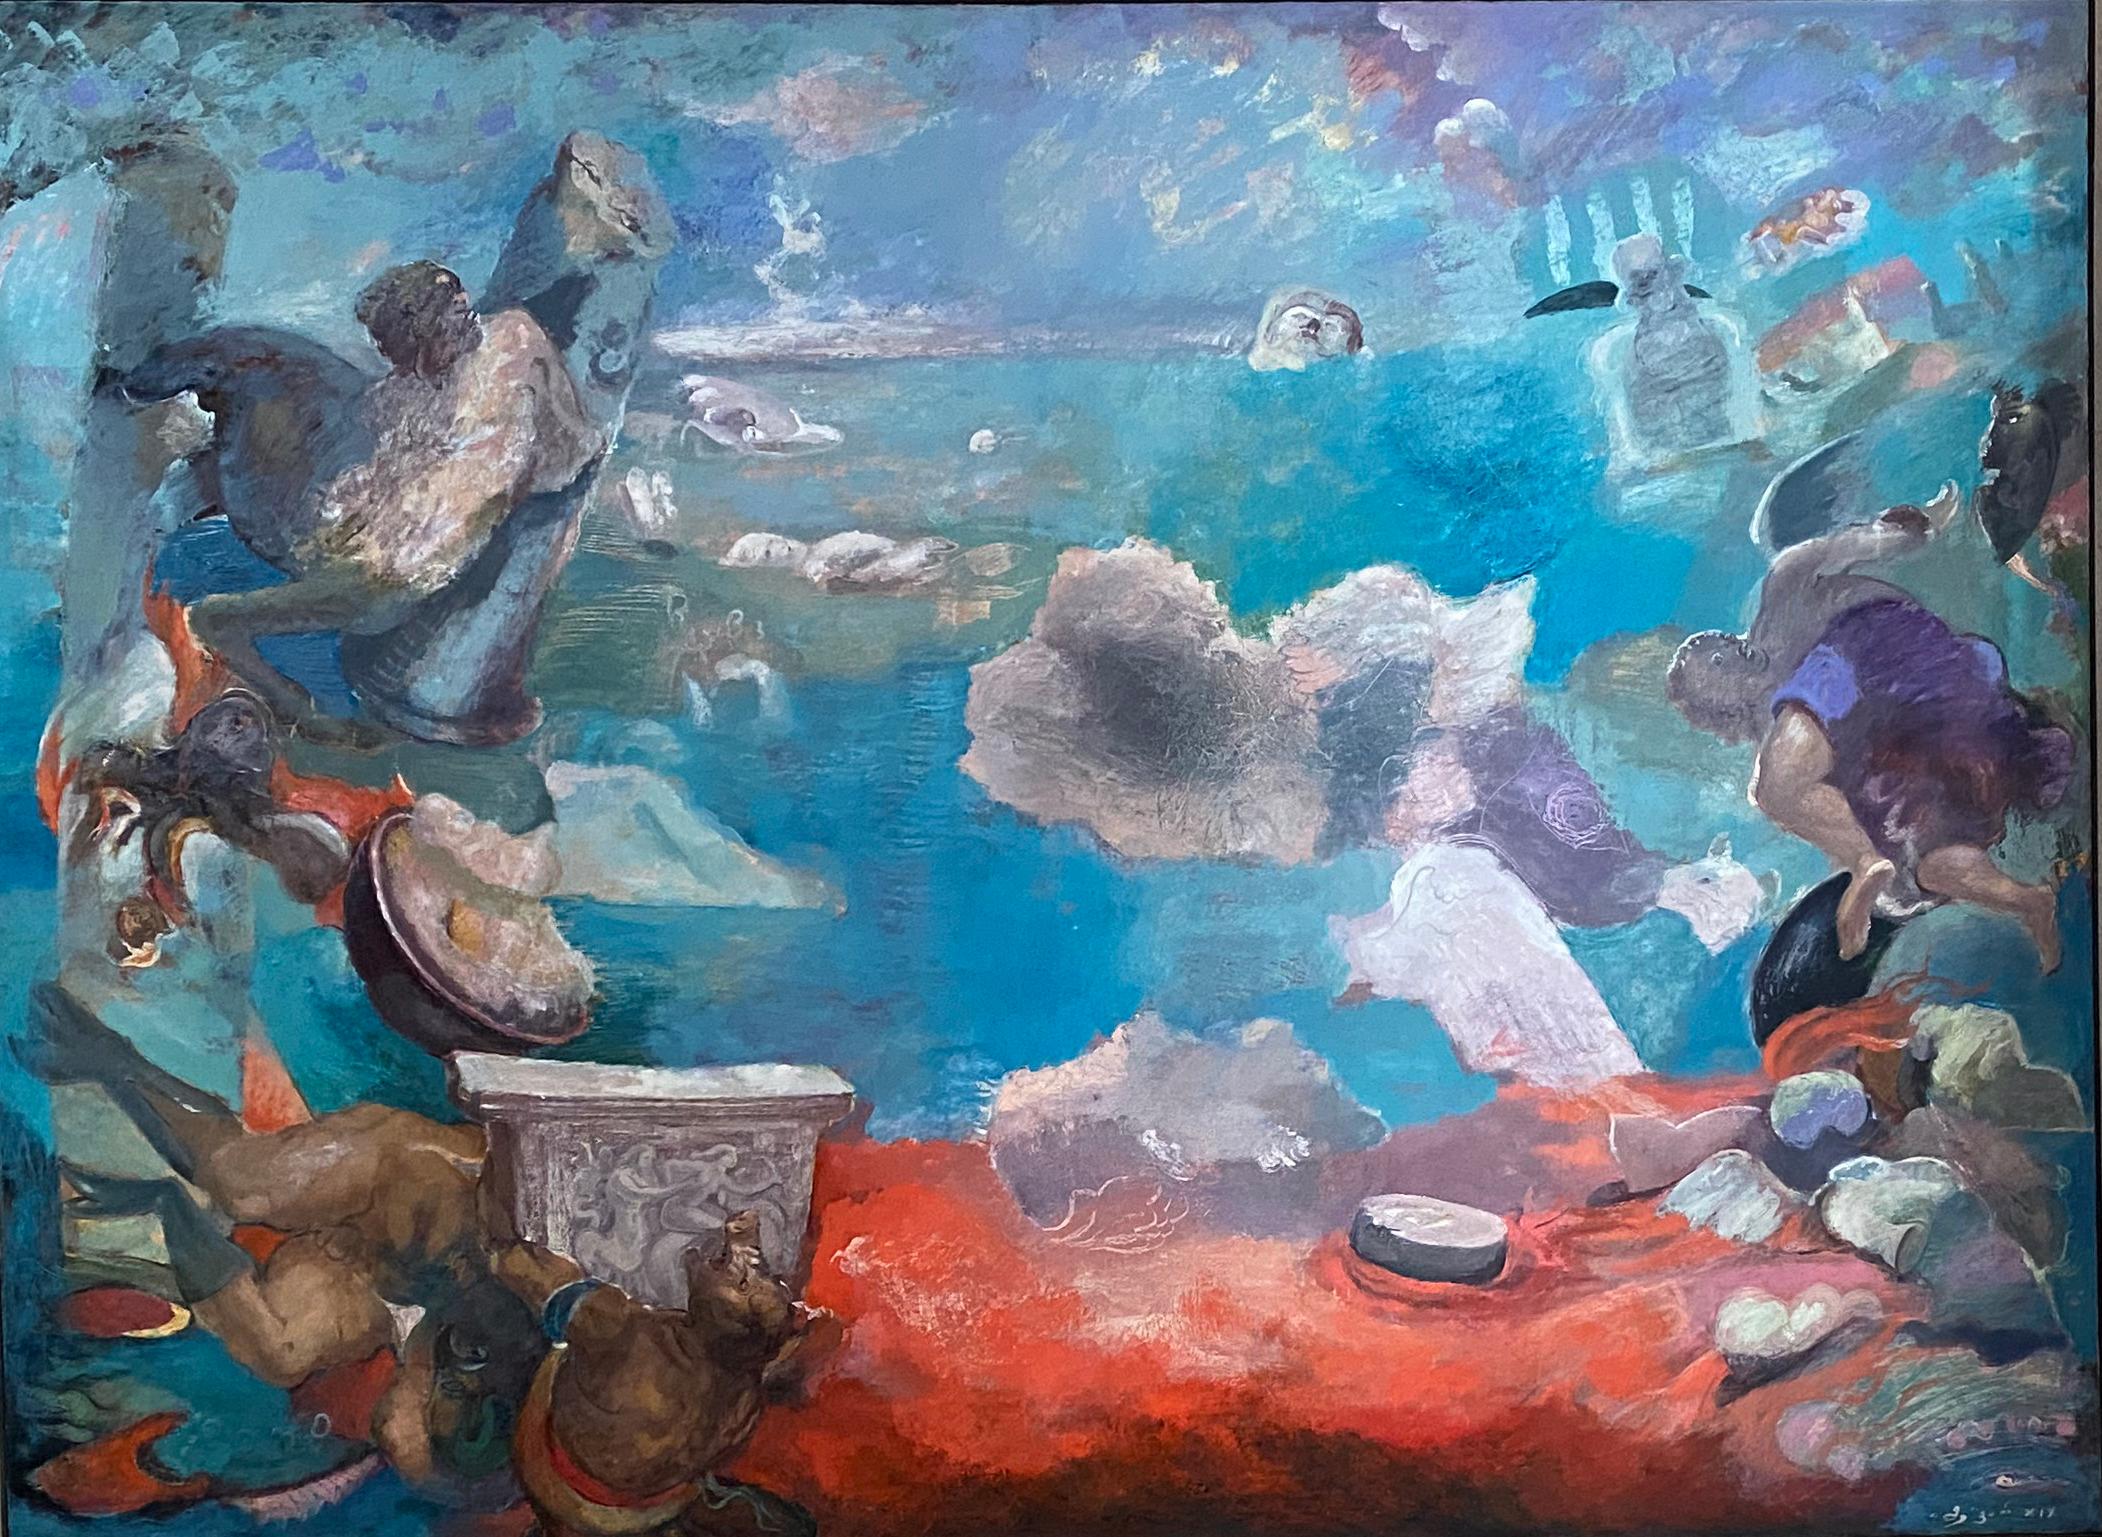 Huile sur toile

Giorgi Kukhalashvili est un artiste géorgien né en 1982 qui vit et travaille à Tbilissi, en Géorgie. Il est le fondateur de l'organisation "Language of Art". En 2002, il a terminé le collège d'art Iakob Nikoladze à Tbilissi. En